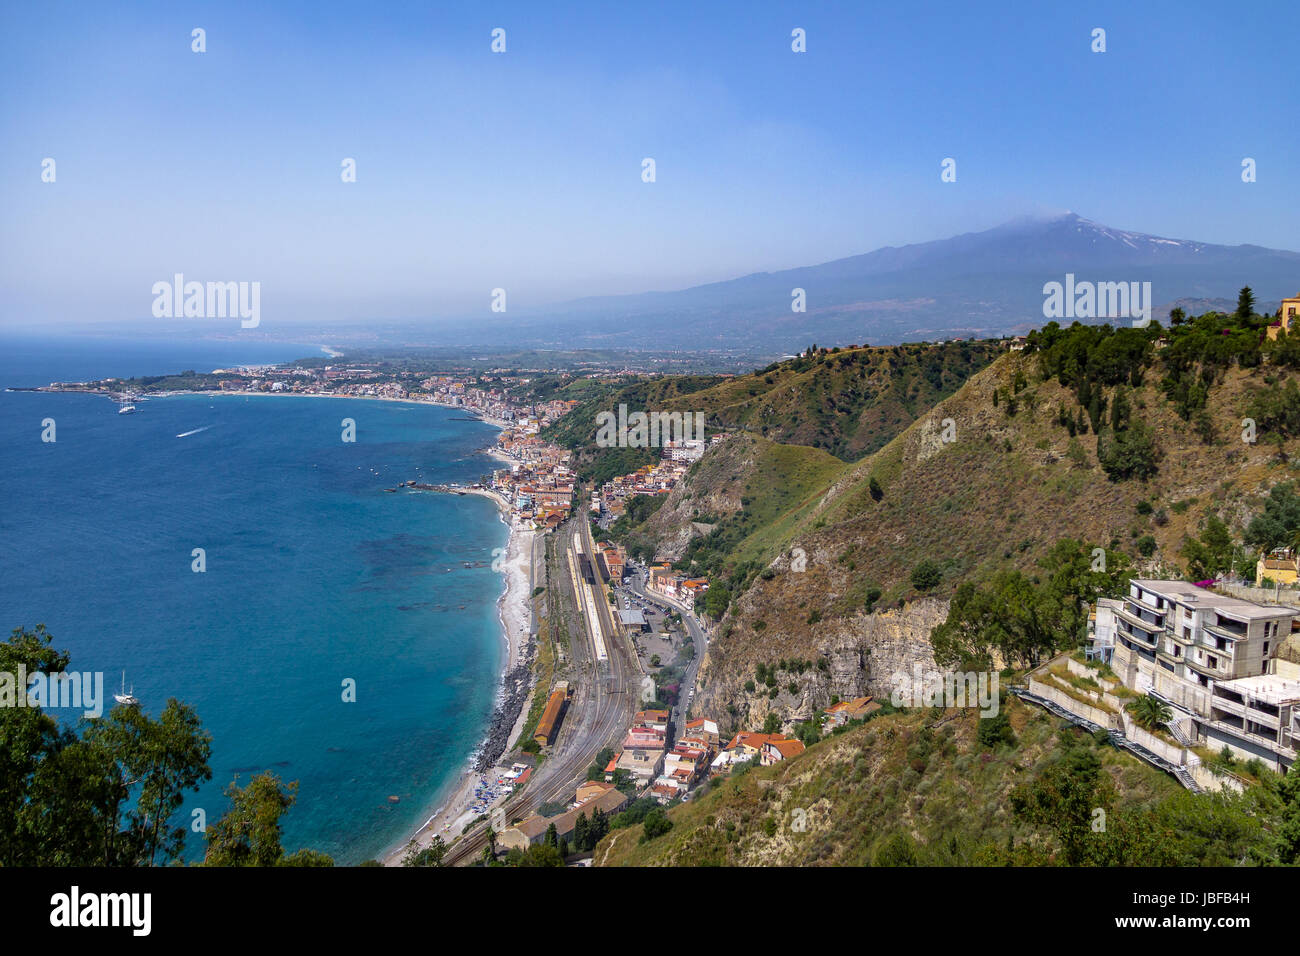 Aerial view of Taormina city, mediterranean sea and Mount Etna Volcano - Taormina, Sicily, Italy Stock Photo